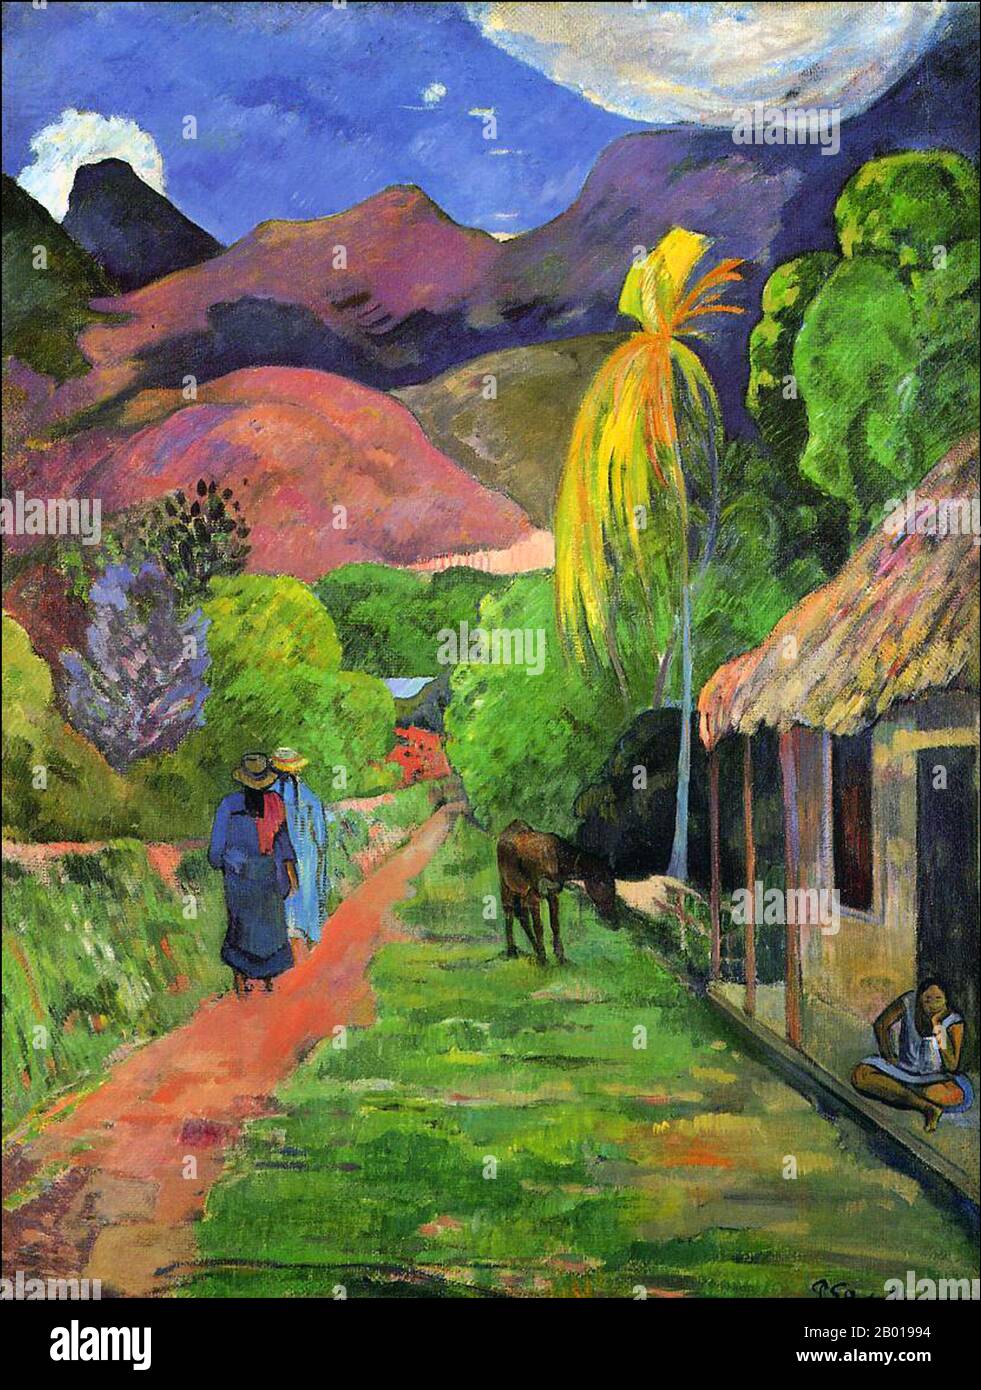 Tahiti: 'Rue de Tahiti' (strada a Tahiti). Dipinto a olio su tela di Paul Gauguin (7 giugno 1848 - 8 maggio 1903), 1891. Paul Gauguin nacque a Parigi nel 1848 e trascorse la sua infanzia in Perù. Lavorò come agente di cambio con poco successo, e soffrì di forti depressione. Dipinse anche lui. Nel 1891, Gauguin, frustrato dalla mancanza di riconoscimento in patria e dalla mancanza di difficoltà finanziaria, salì ai tropici per sfuggire alla civiltà europea e "tutto ciò che è artificiale e convenzionale”. Il suo tempo c'era un argomento di grande interesse sia allora che nei tempi moderni. Foto Stock